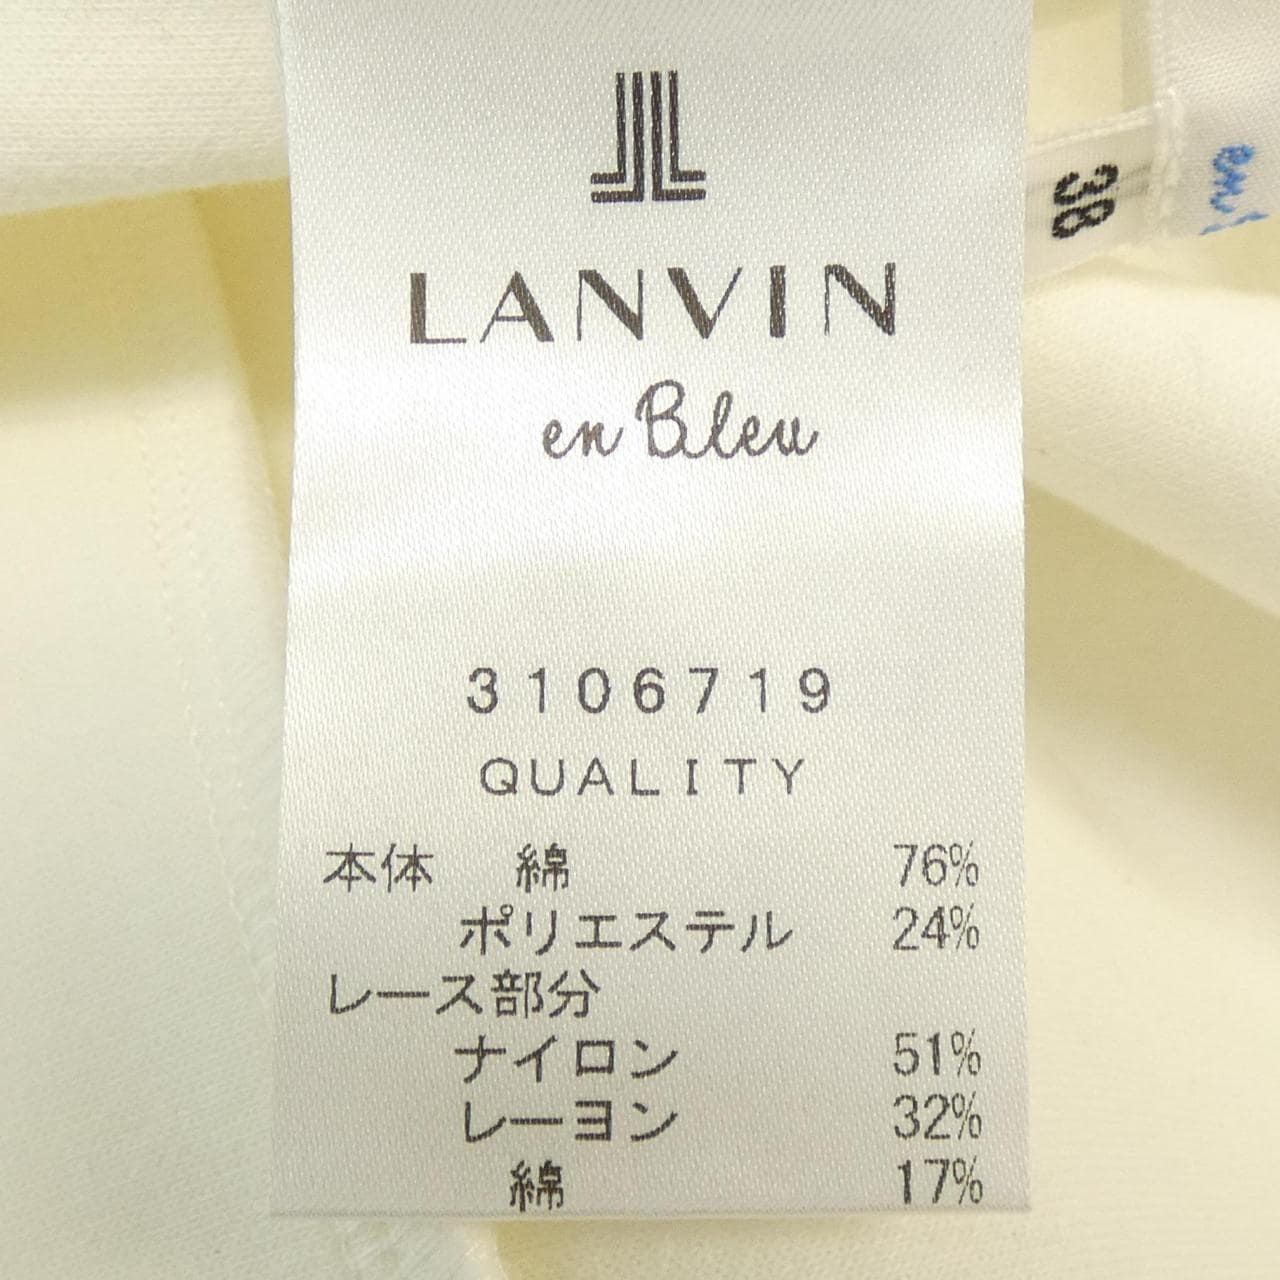 LANVIN On Blue LANVIN en Bleu Sweatshirt